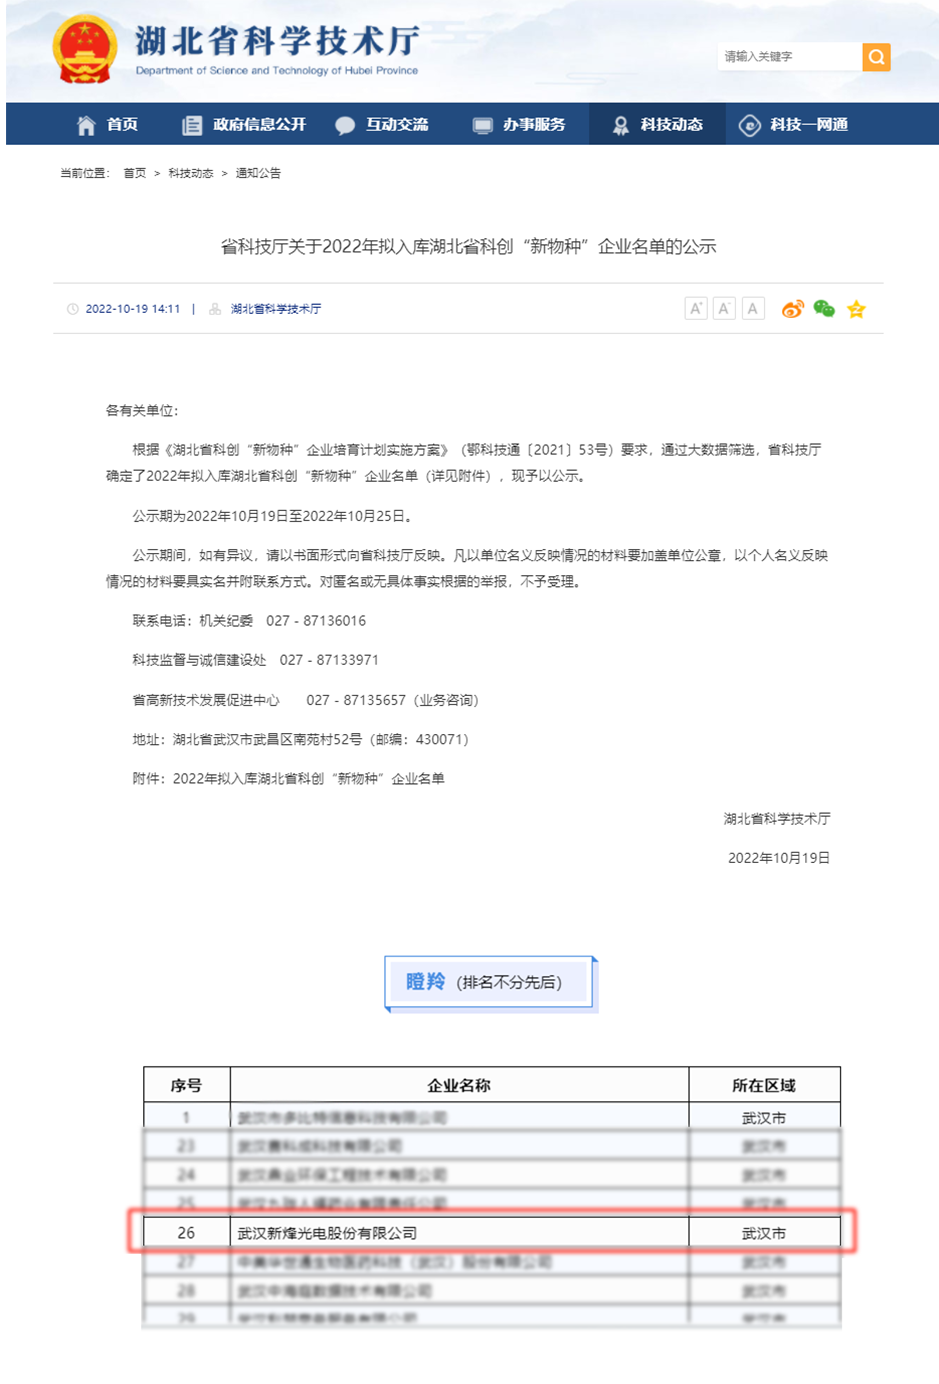 【企业资讯】新烽光电入选2022湖北省科创“新物种”瞪羚企业